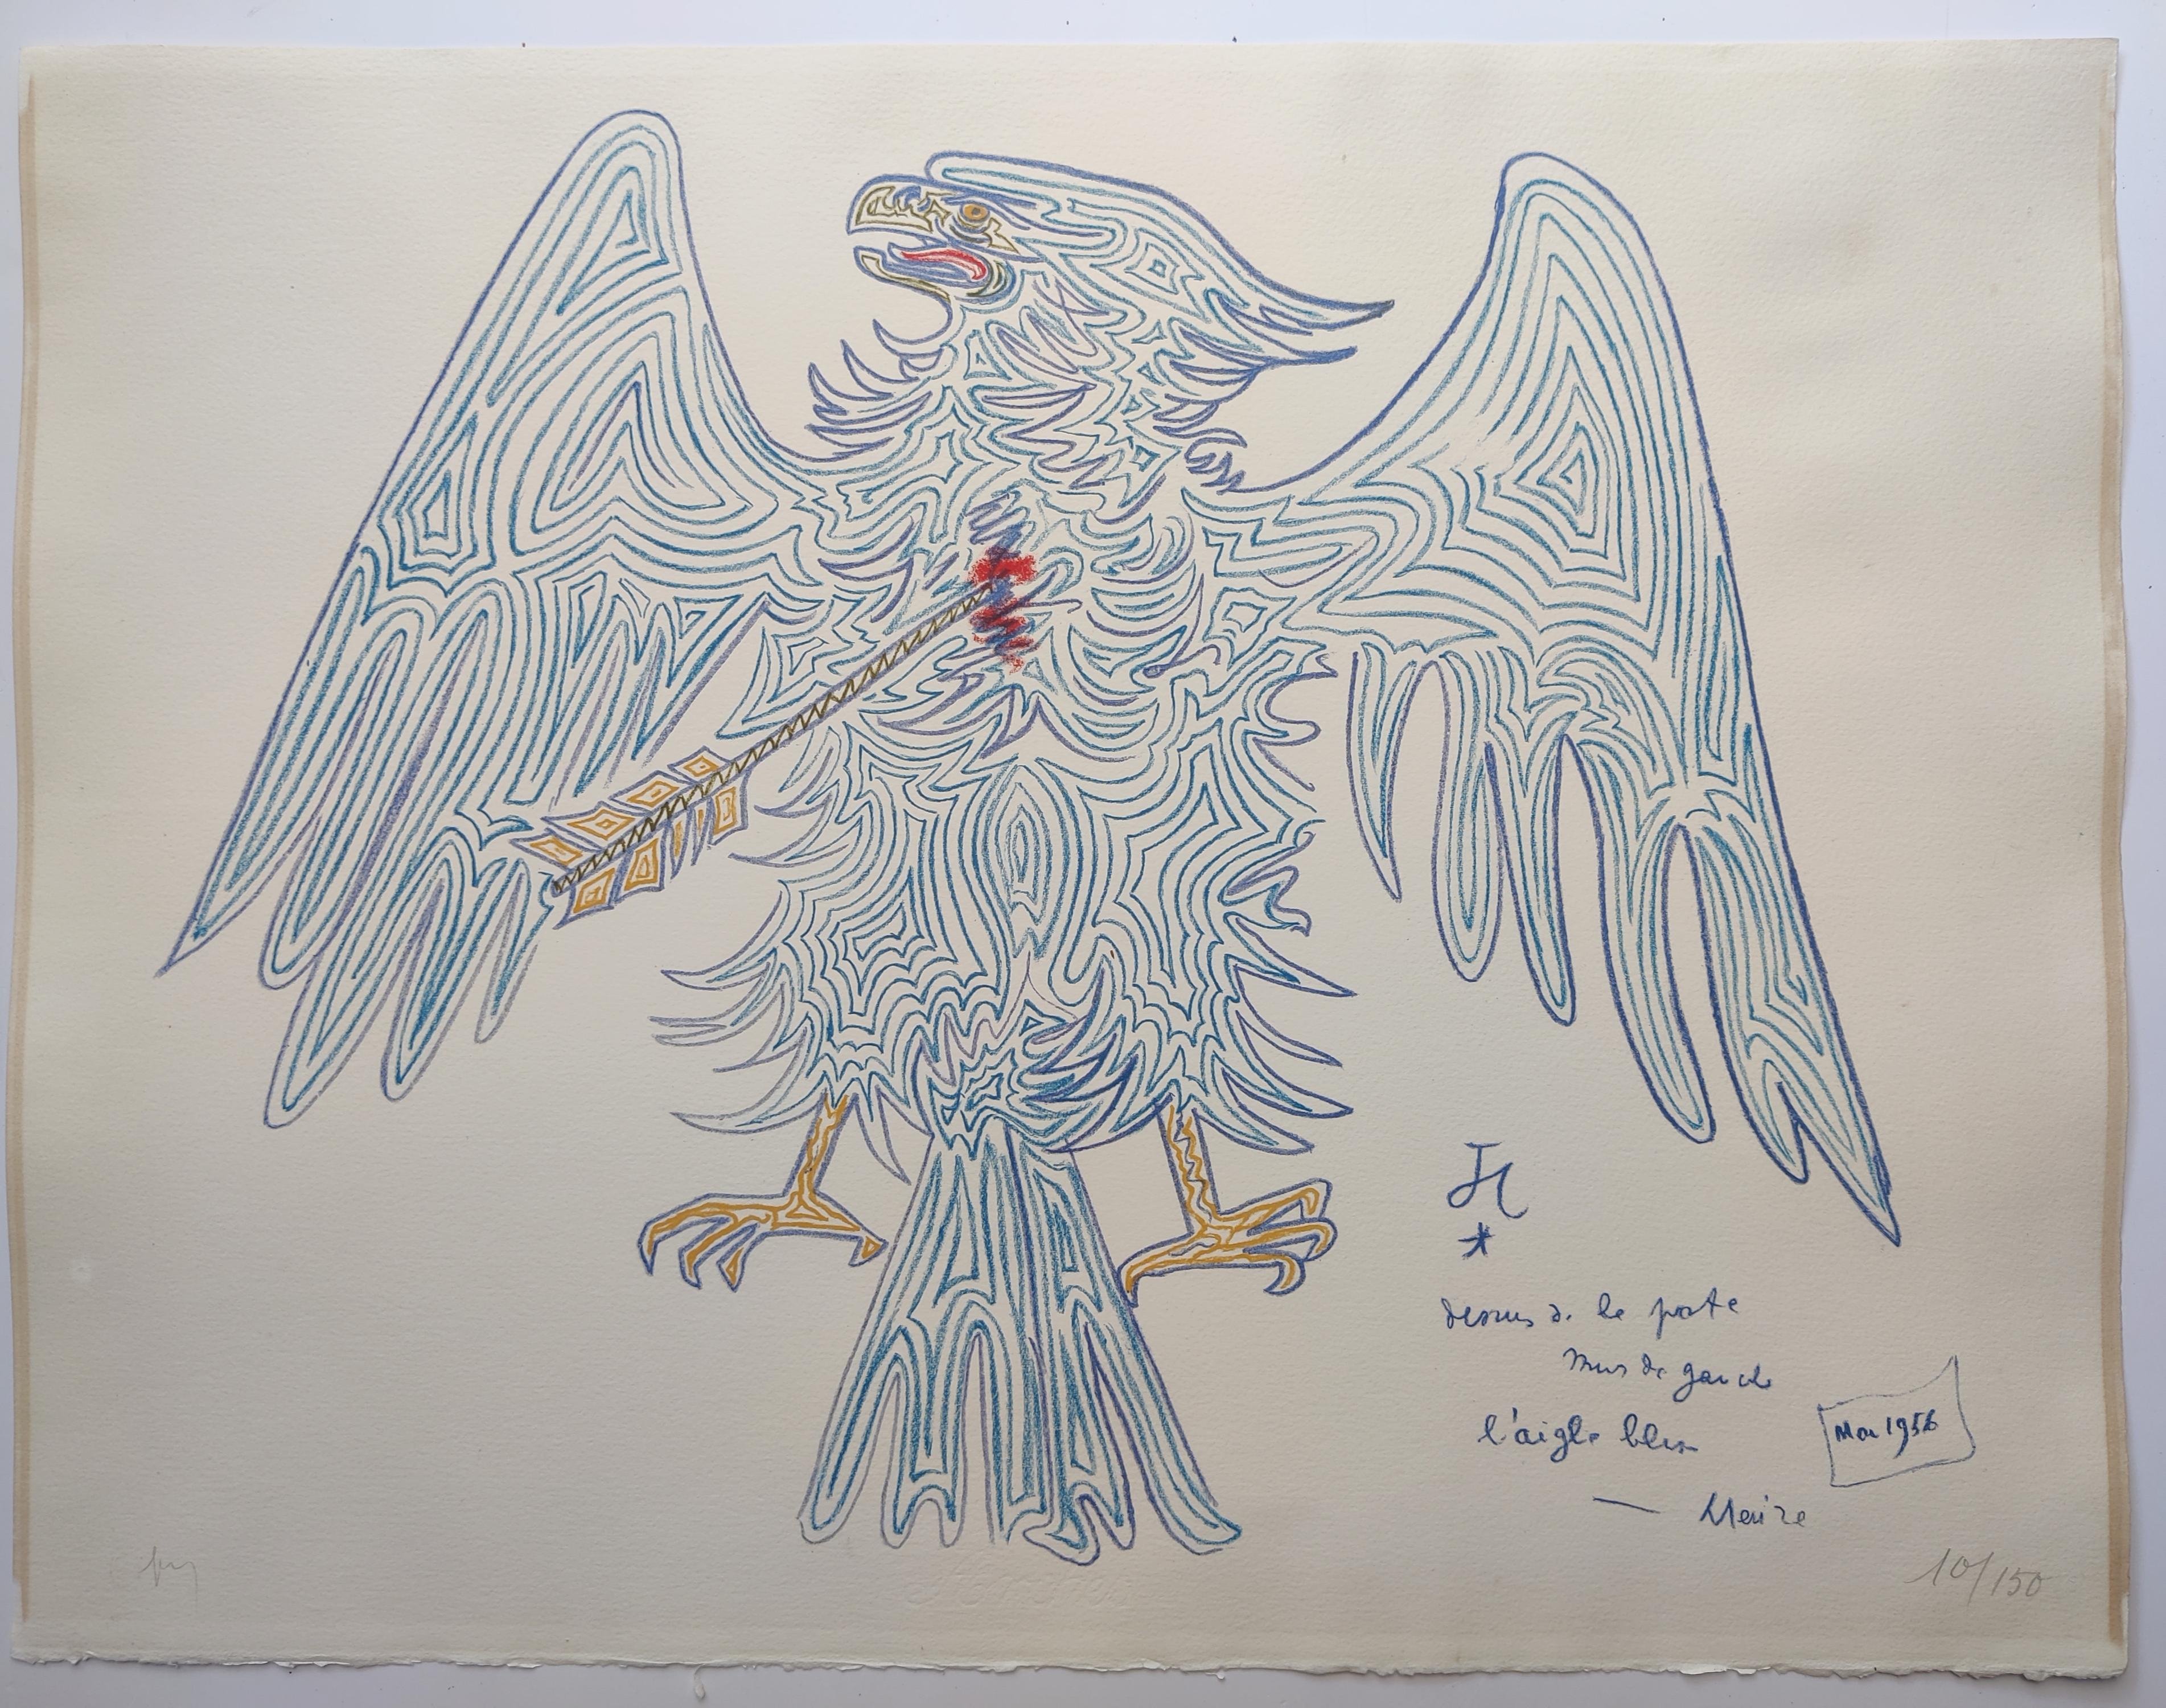 Jean Cocteau 
Aigle bleu, 1956 
Signé en bas à gauche 
Edition 10 / 150 en bas à droite
Taille de la feuille : 65 x 50 cm 
Non encadré